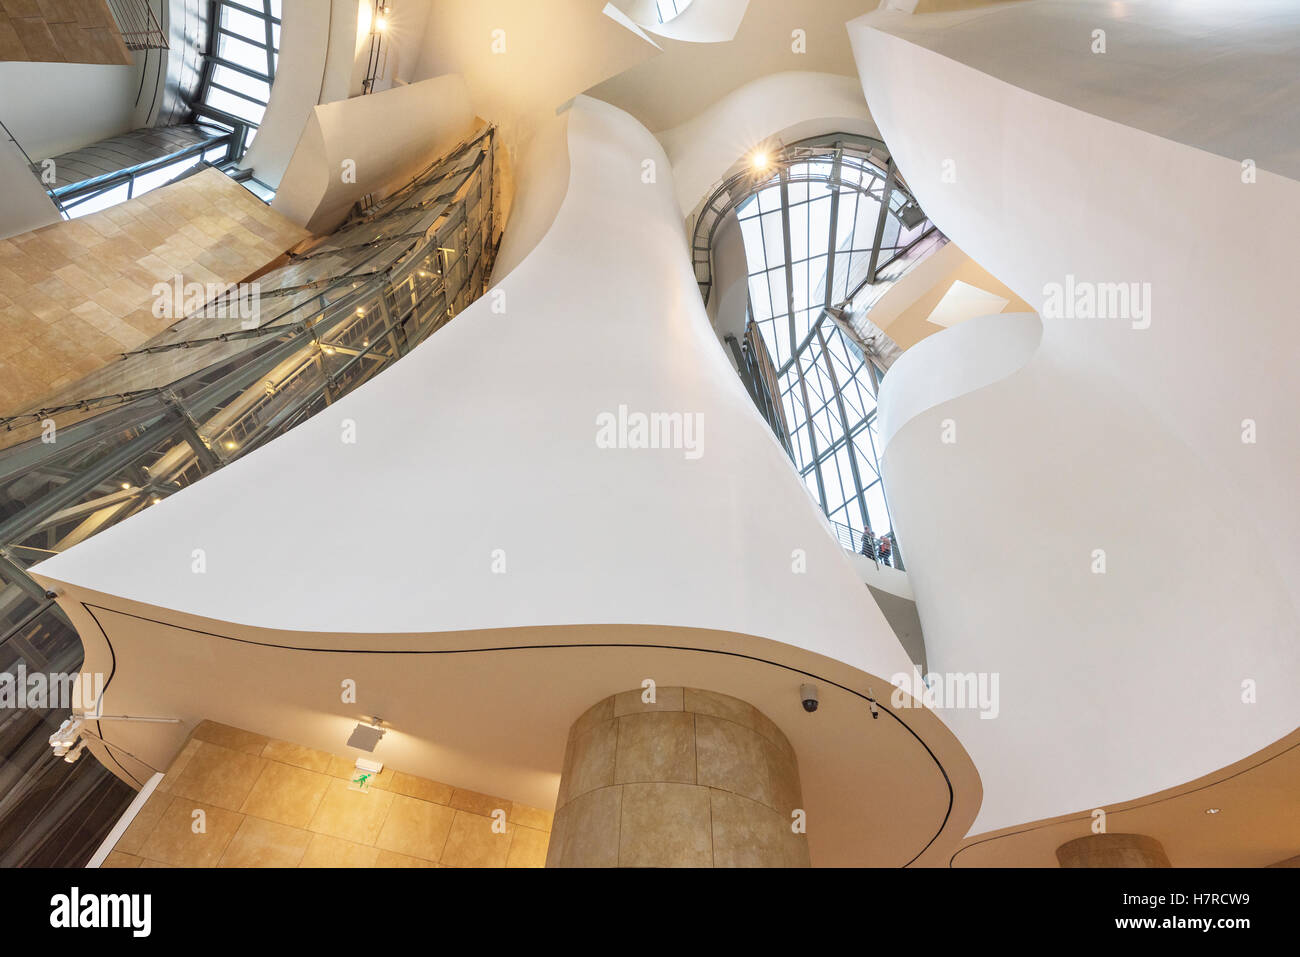 BILBAO, Spagna - 16 ottobre: Interno del Museo Guggenheim il 16 ottobre 2016 a Bilbao, Spagna. è uno dei più importanti mus Foto Stock